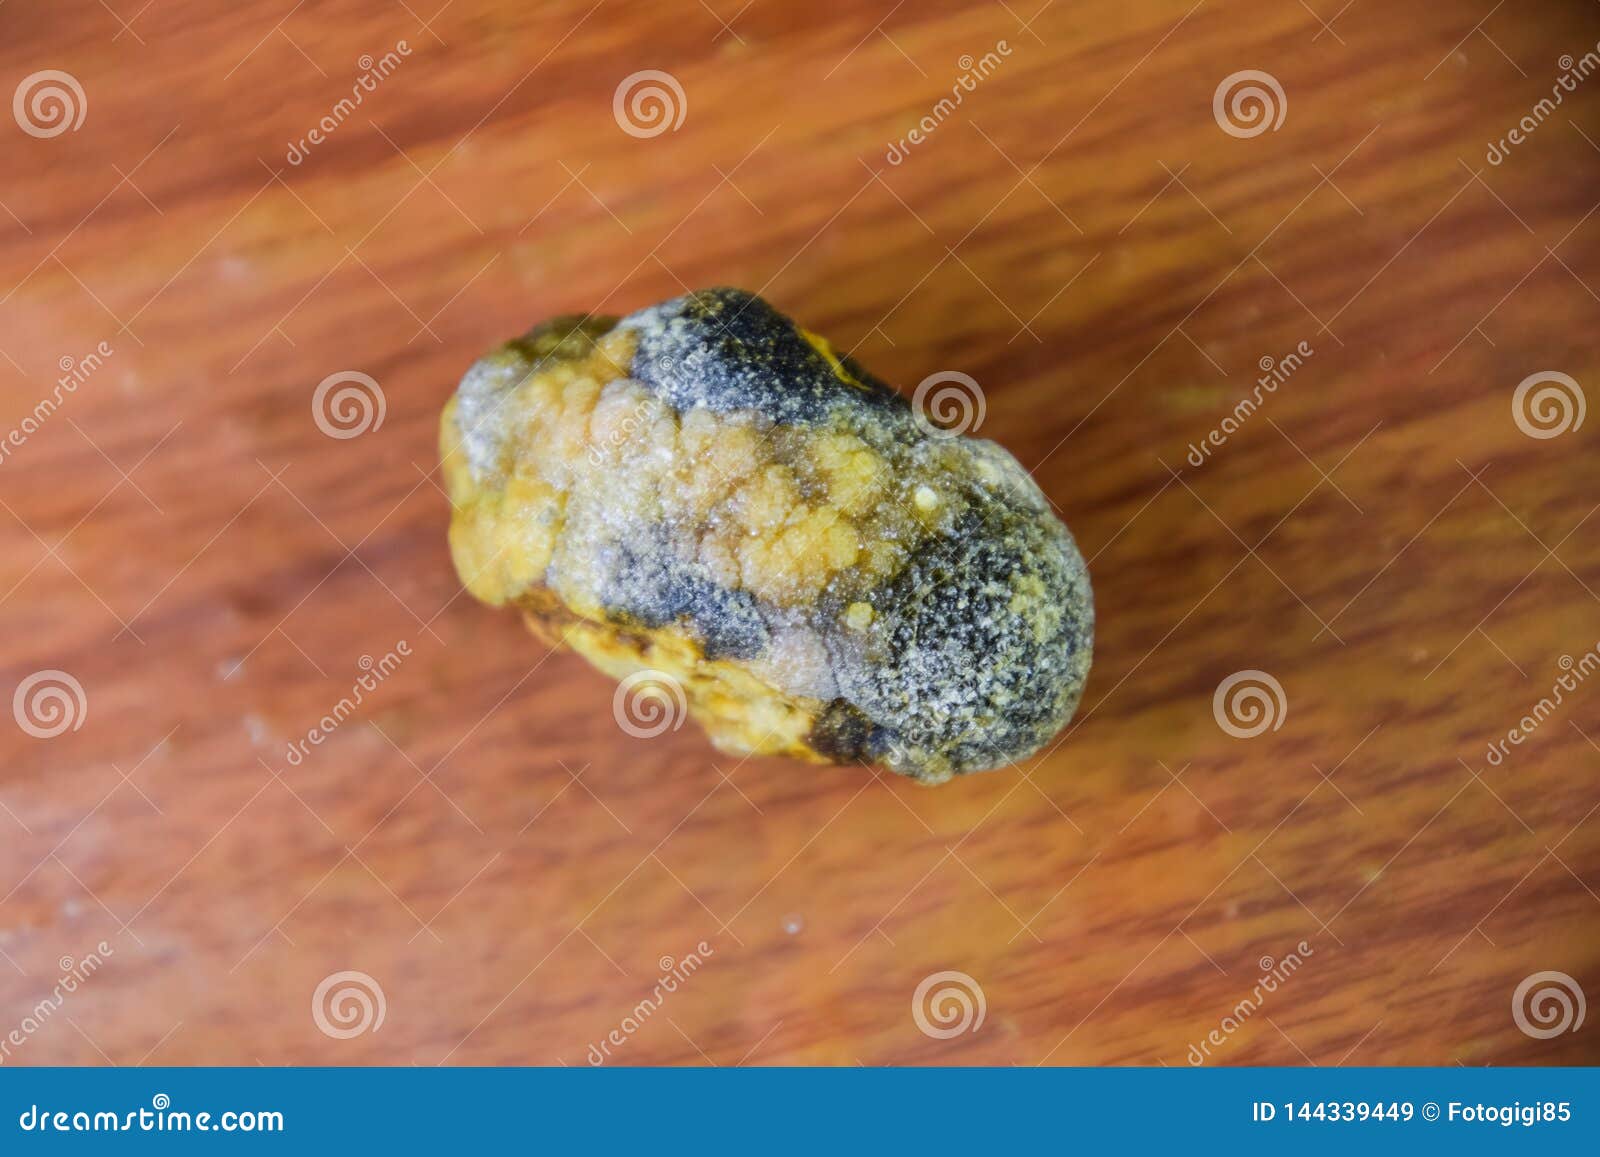 Камни желчном рассосались. Желчный пузырь камни до 7 мм. Камни в жёлчном пузыре смакропрепарат.